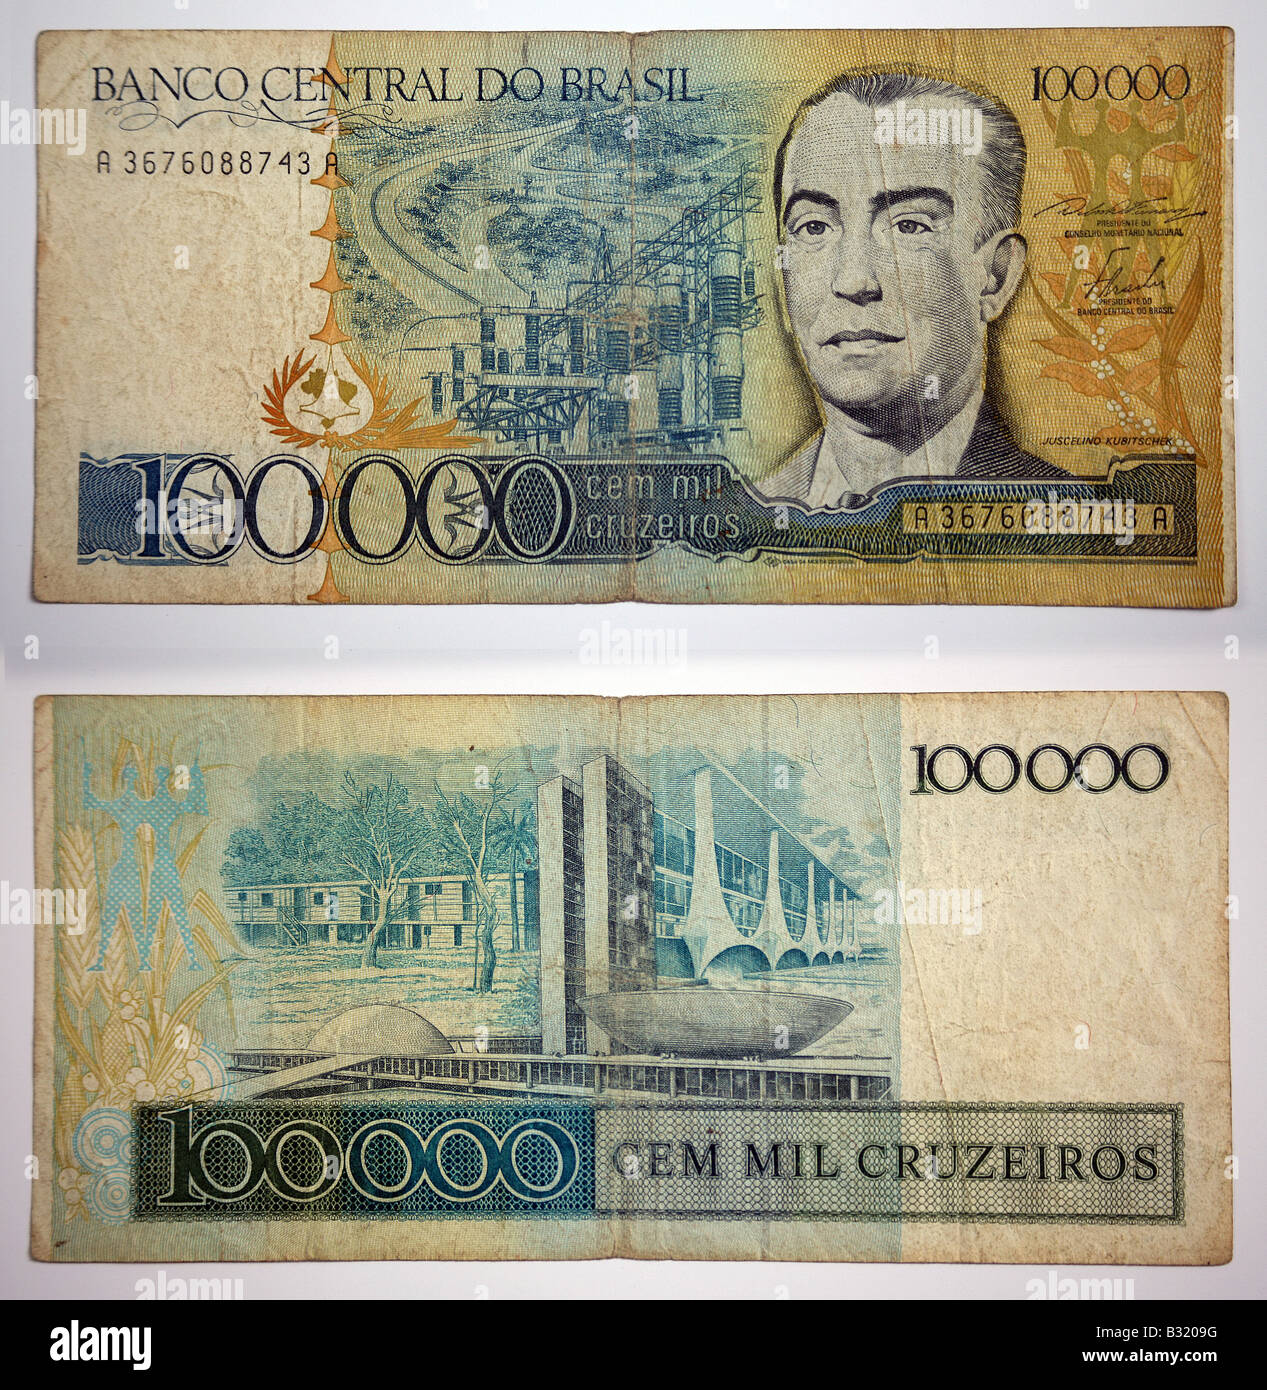 100000 moneda brasileña Banco Central do Brasil Foto de stock